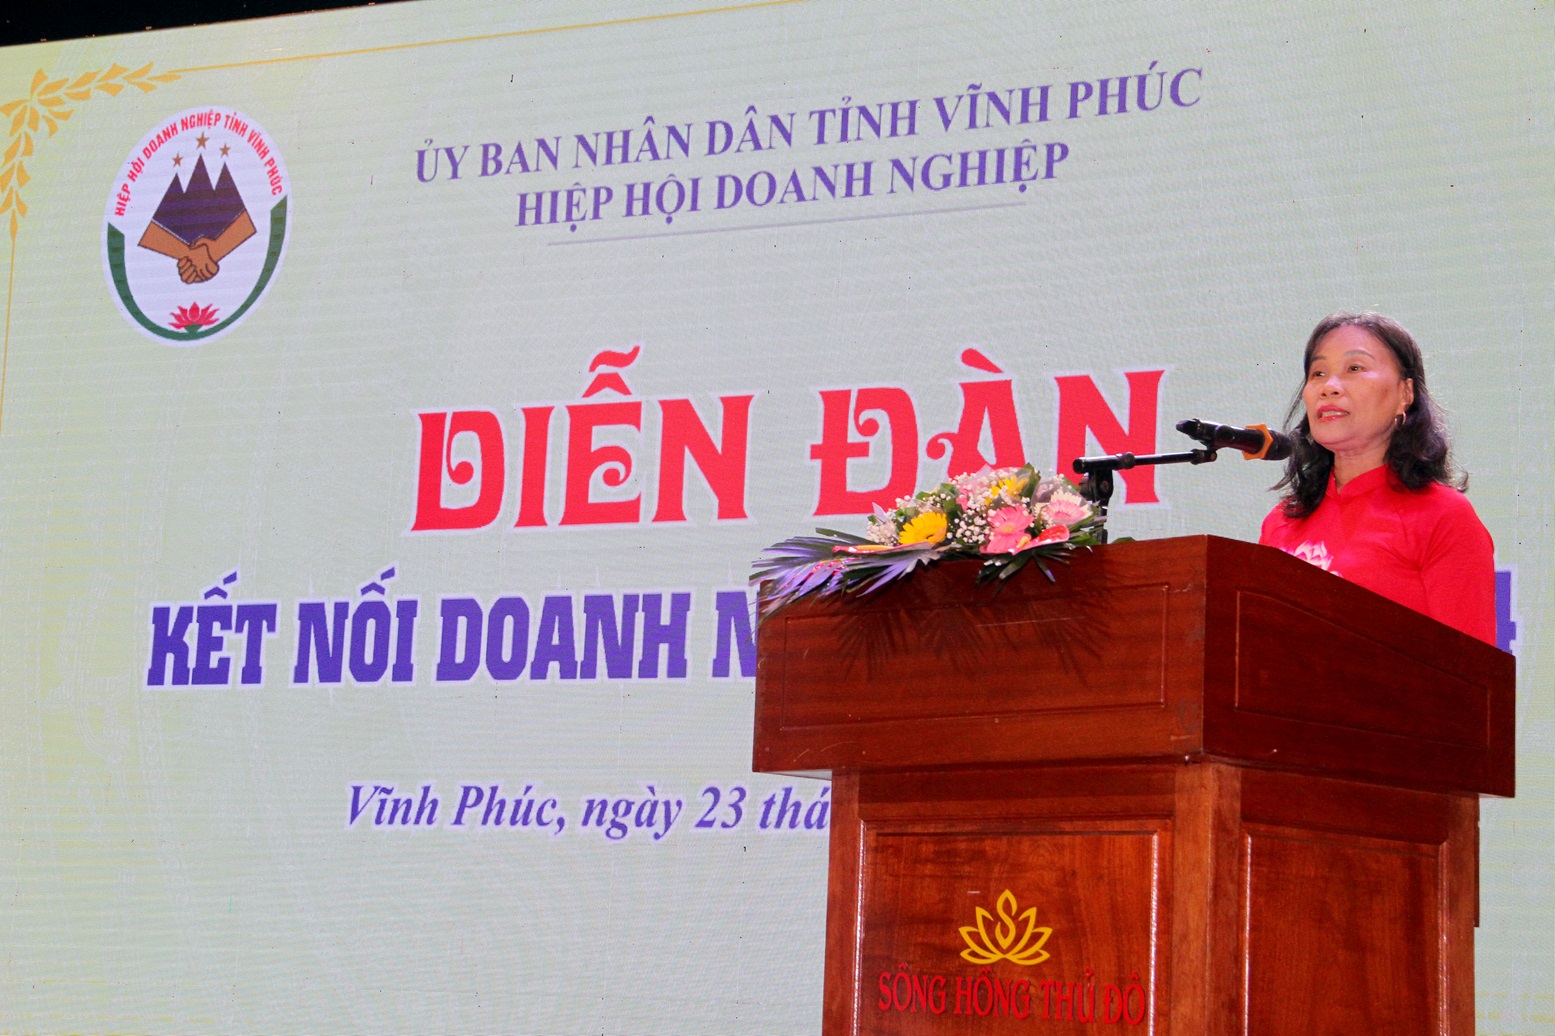 Bà Phạm Thị Hồng Thủy, Chủ tịch Hiệp hội Doanh nghiệp tỉnh Vĩnh Phúc phát biểu tại Diễn đàn